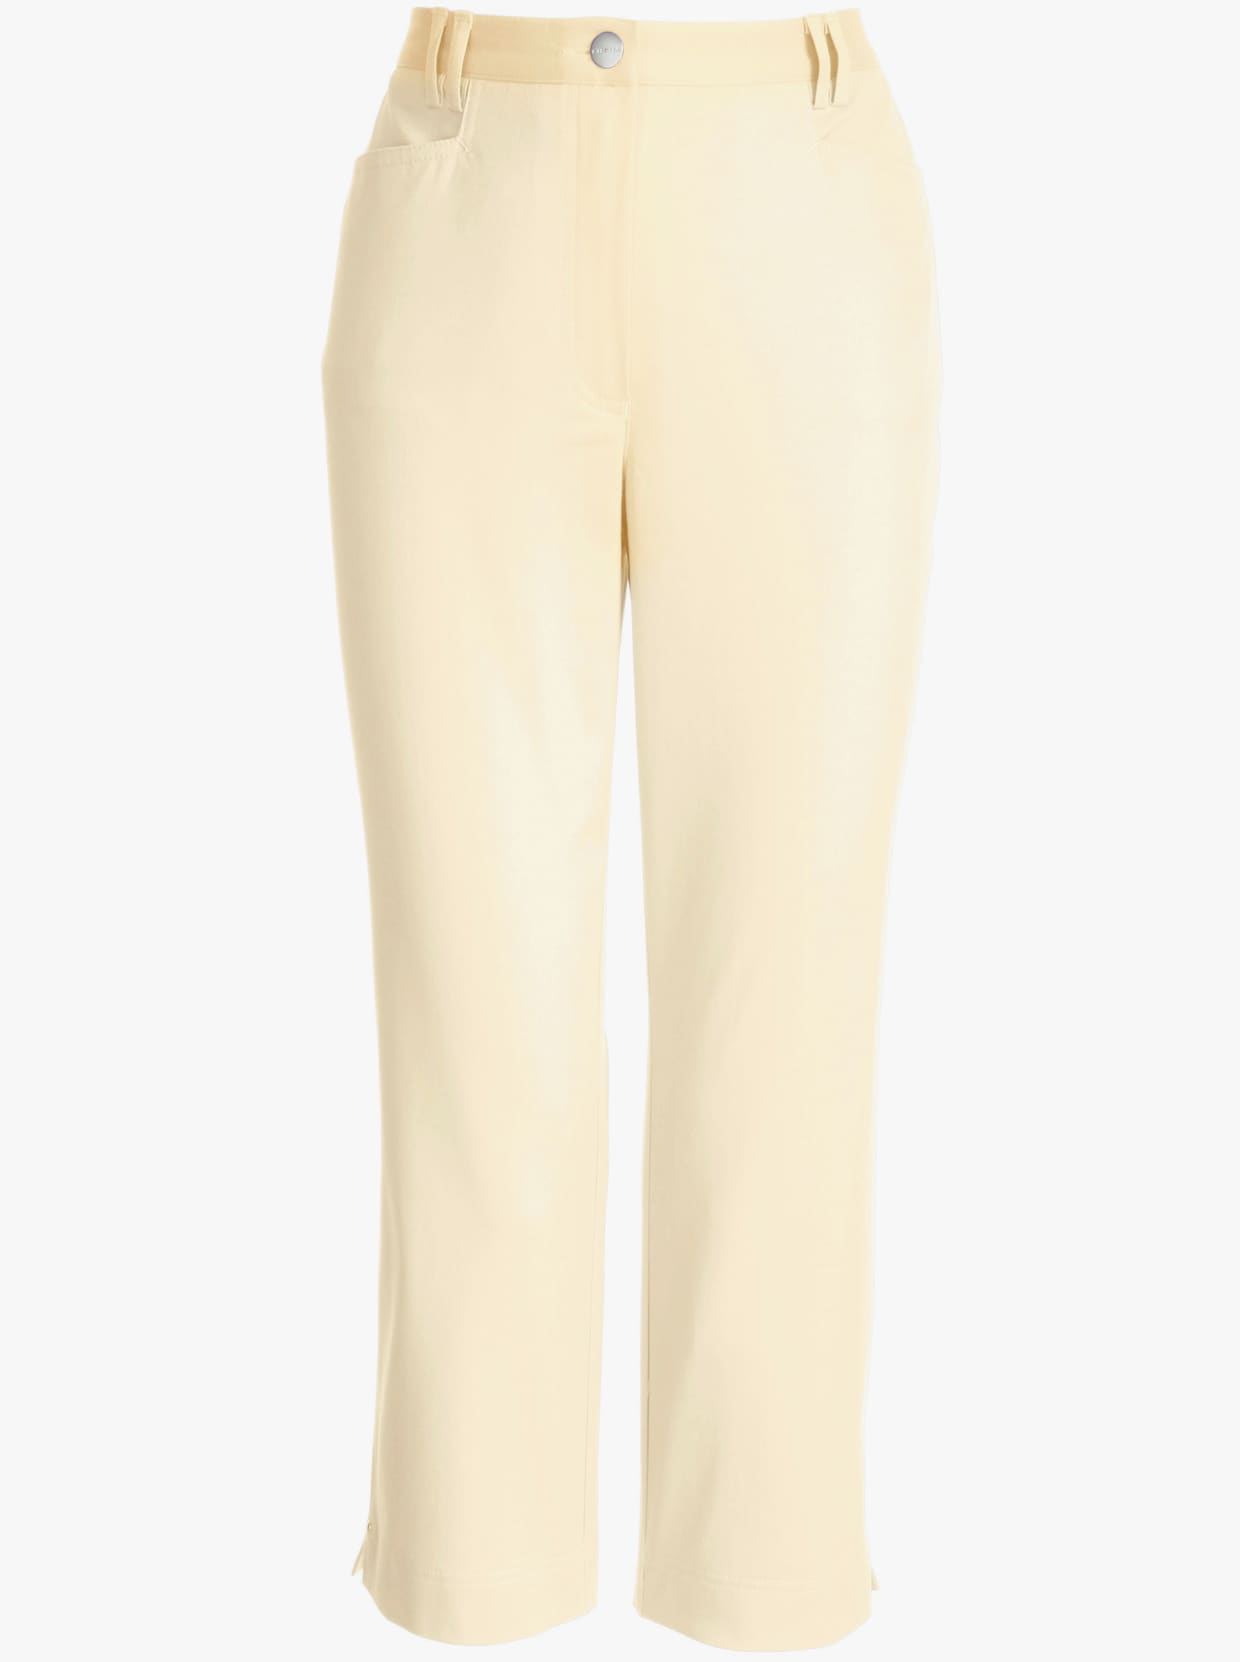 Cosma Pantalon 7/8 - jaune clair